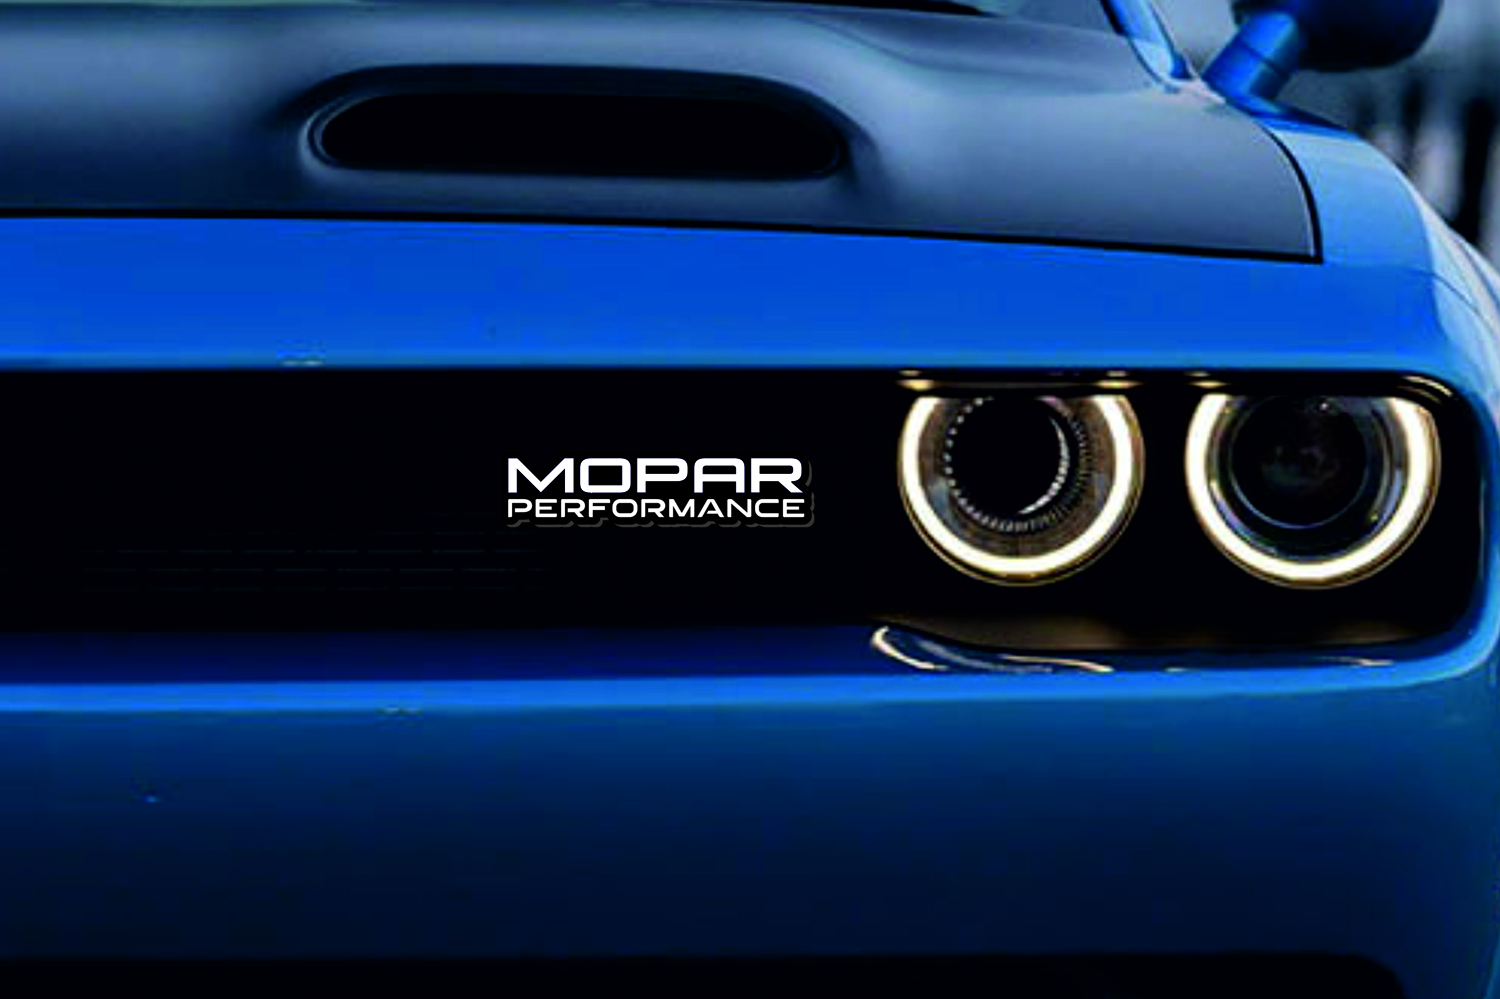 DODGE Radiator grille emblem with Mopar Performance logo